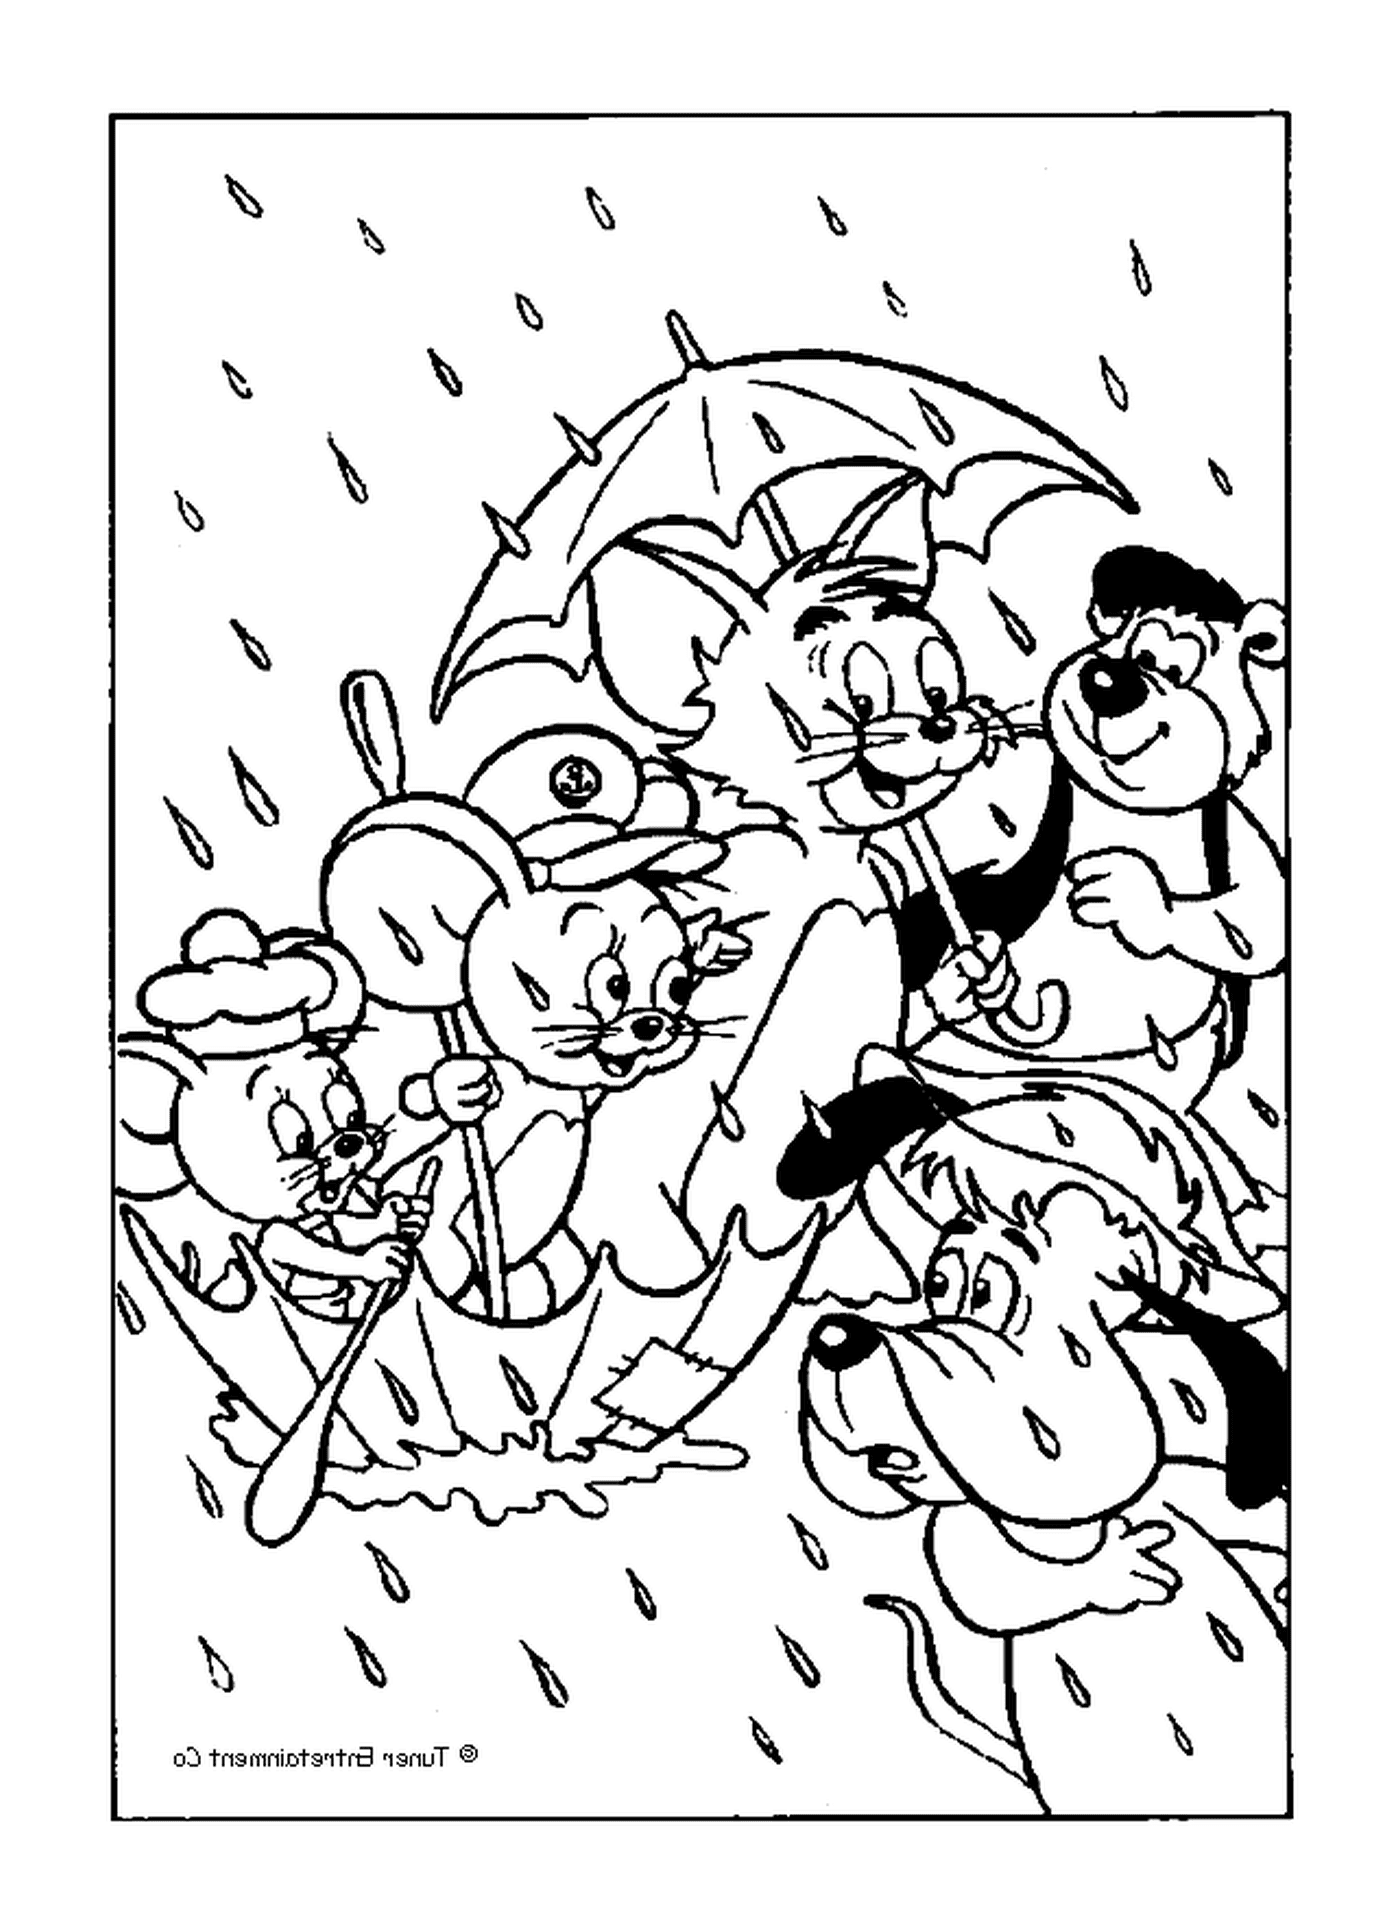  Tom e Jerry sotto la pioggia 